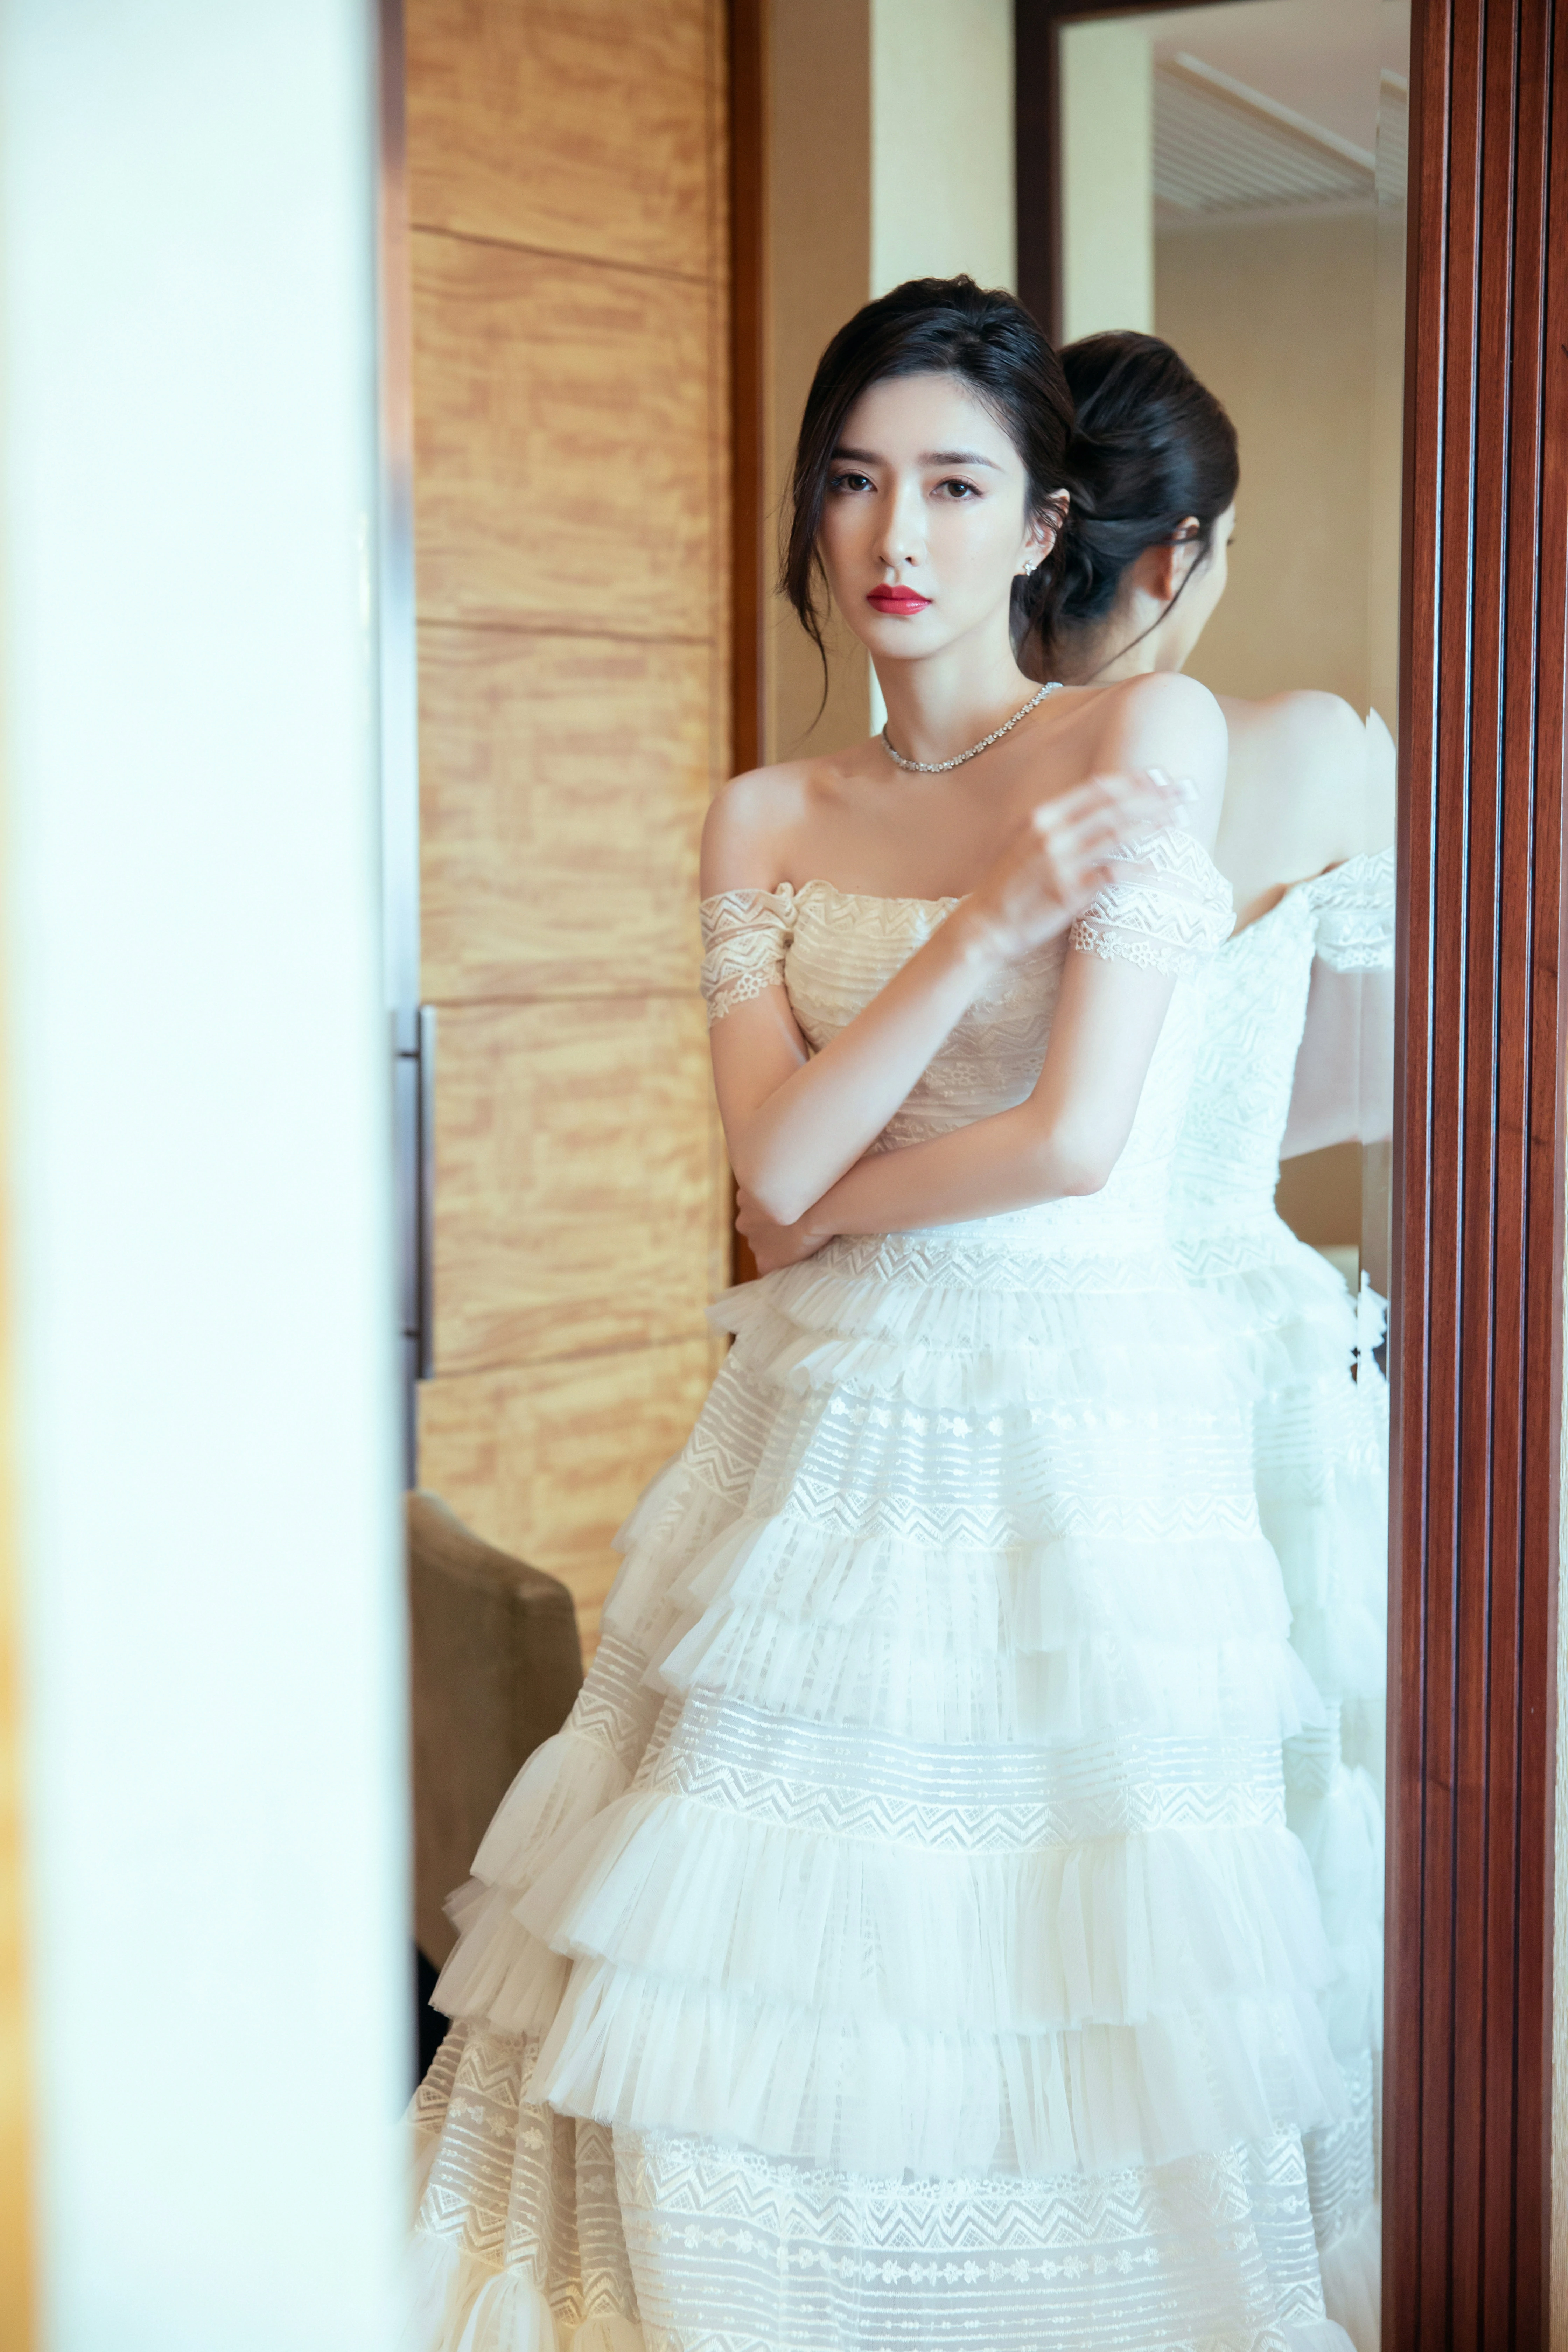 江疏影穿纯白蛋糕裙温婉优雅 自侃戴上头纱就可以结婚了,